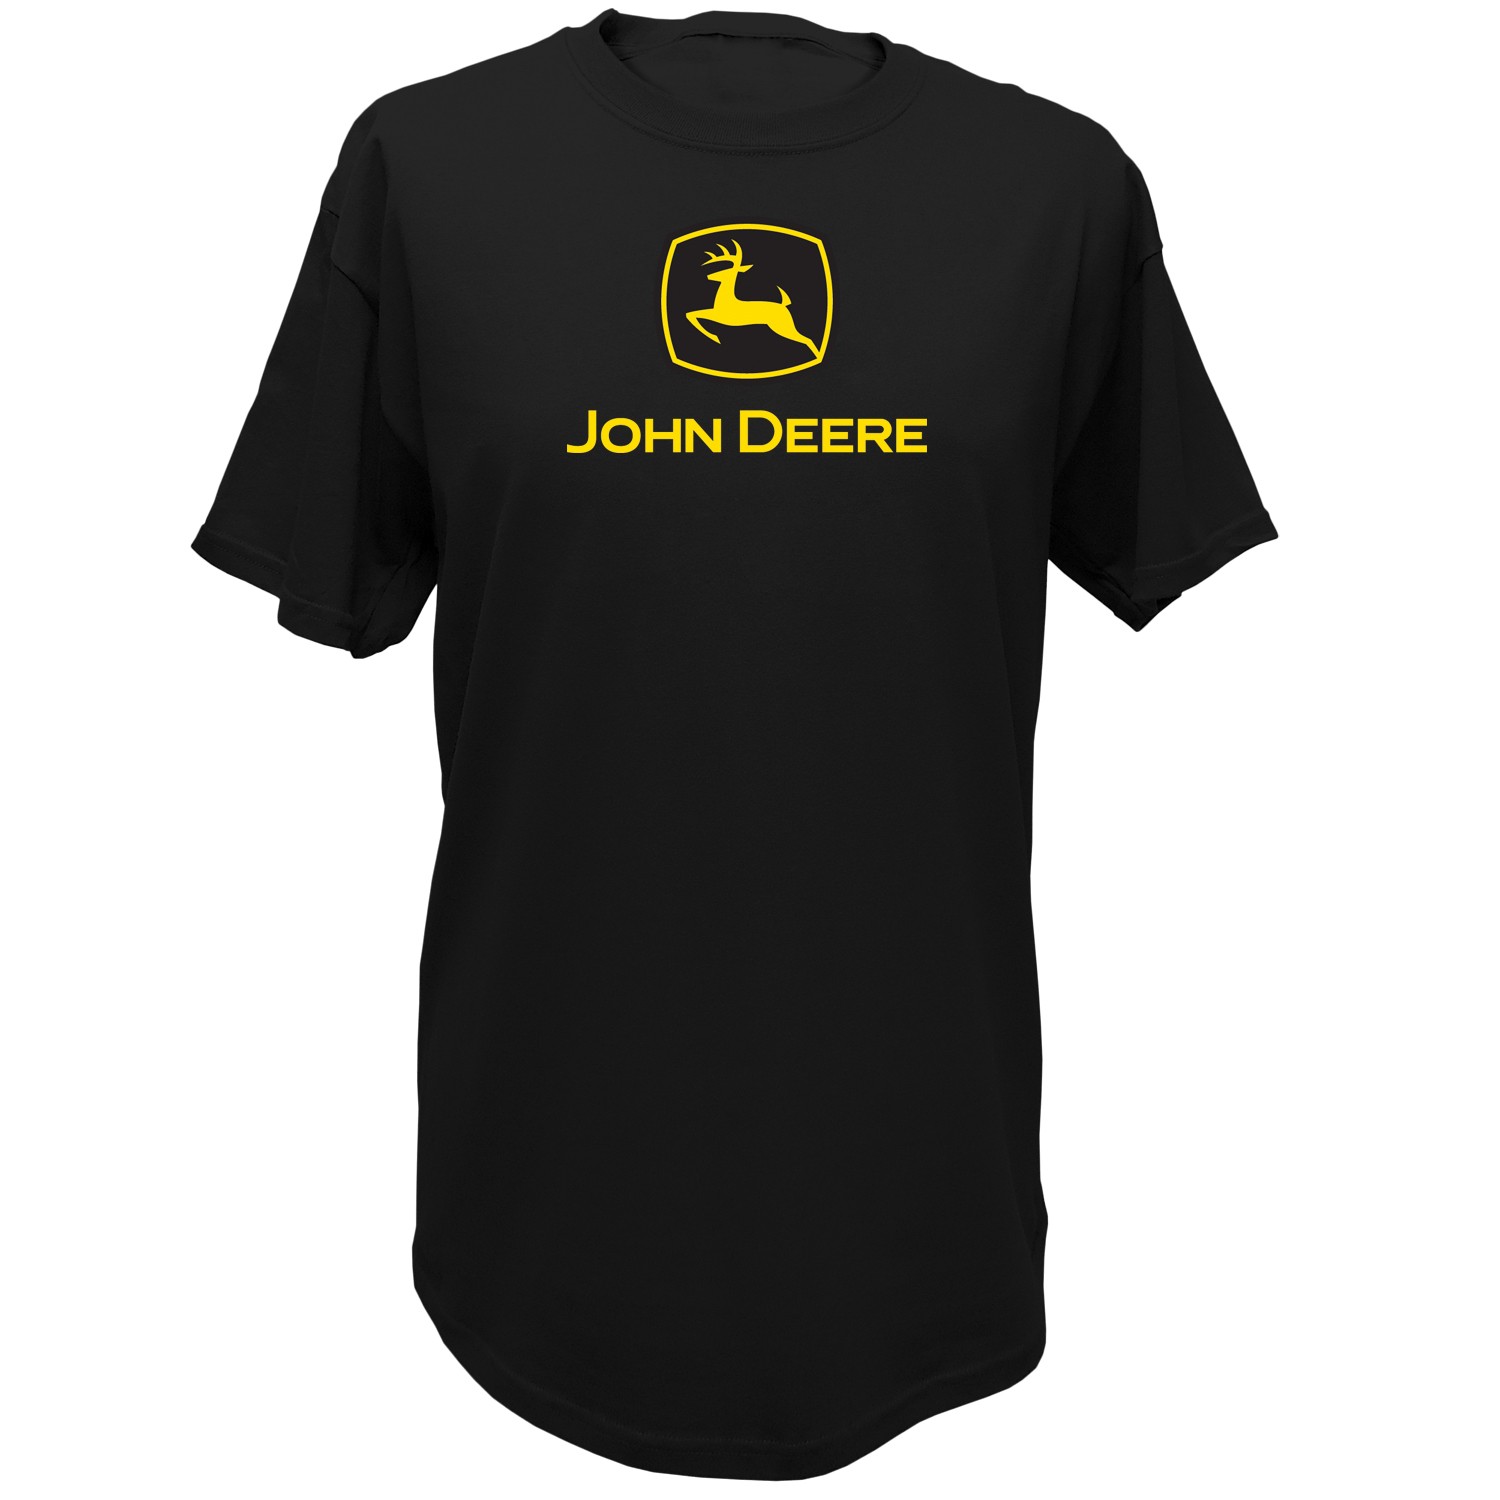 John Deere t shirt features a front screen print design in John Deere ...